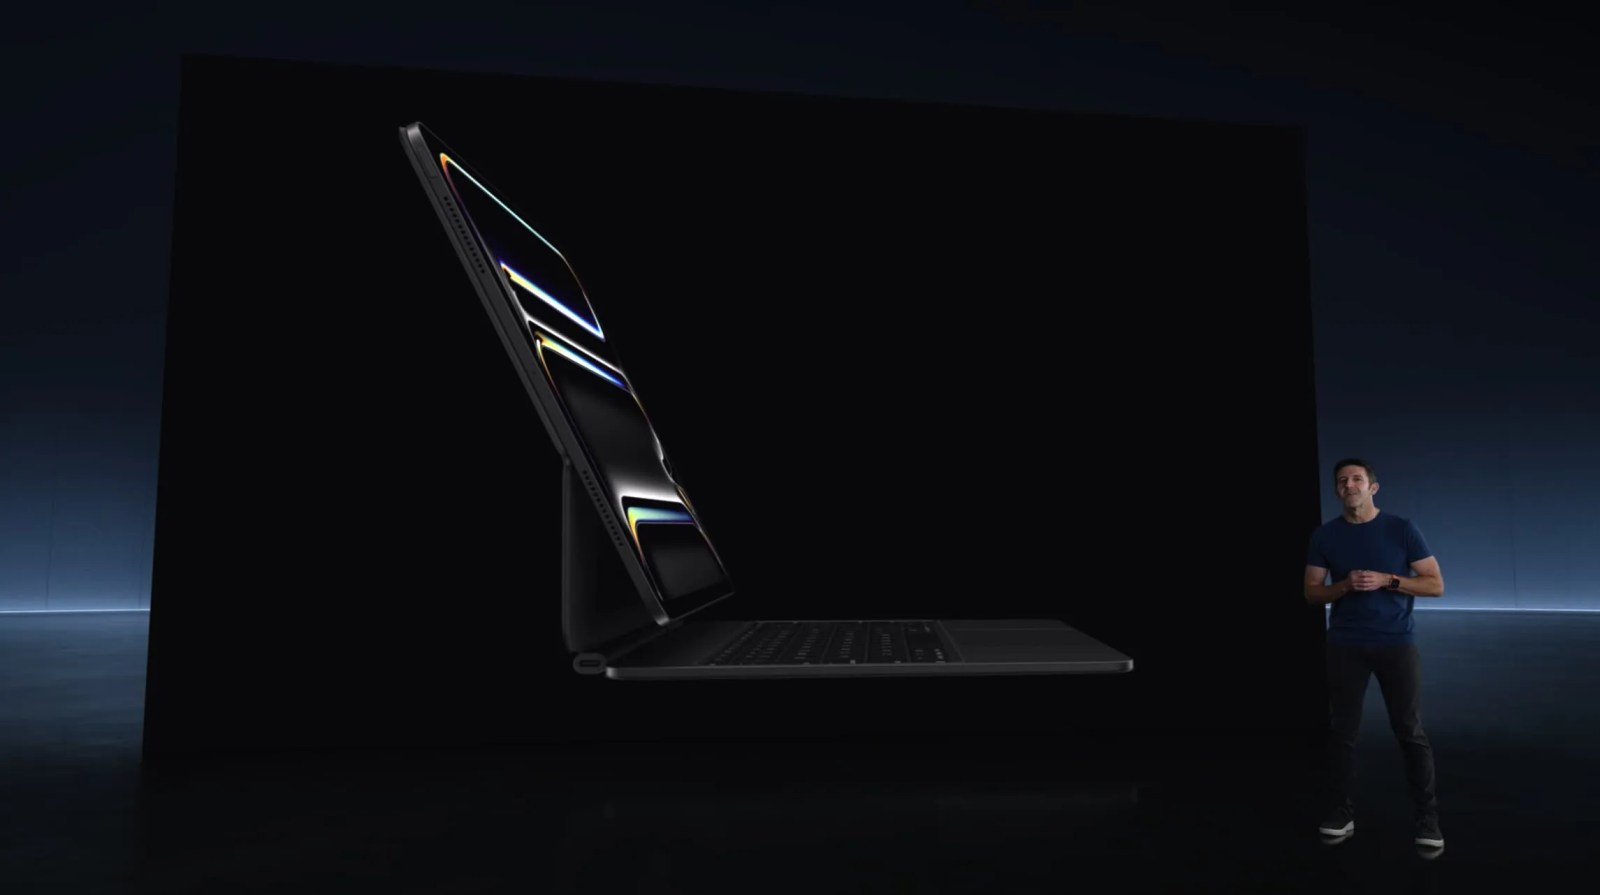 Η Apple παρουσιάζει το Magic Keyboard για το M4 iPad Pro με μεγαλύτερο trackpad, λειτουργικό προφίλ και αλουμινένιο στήριγμα παλάμης